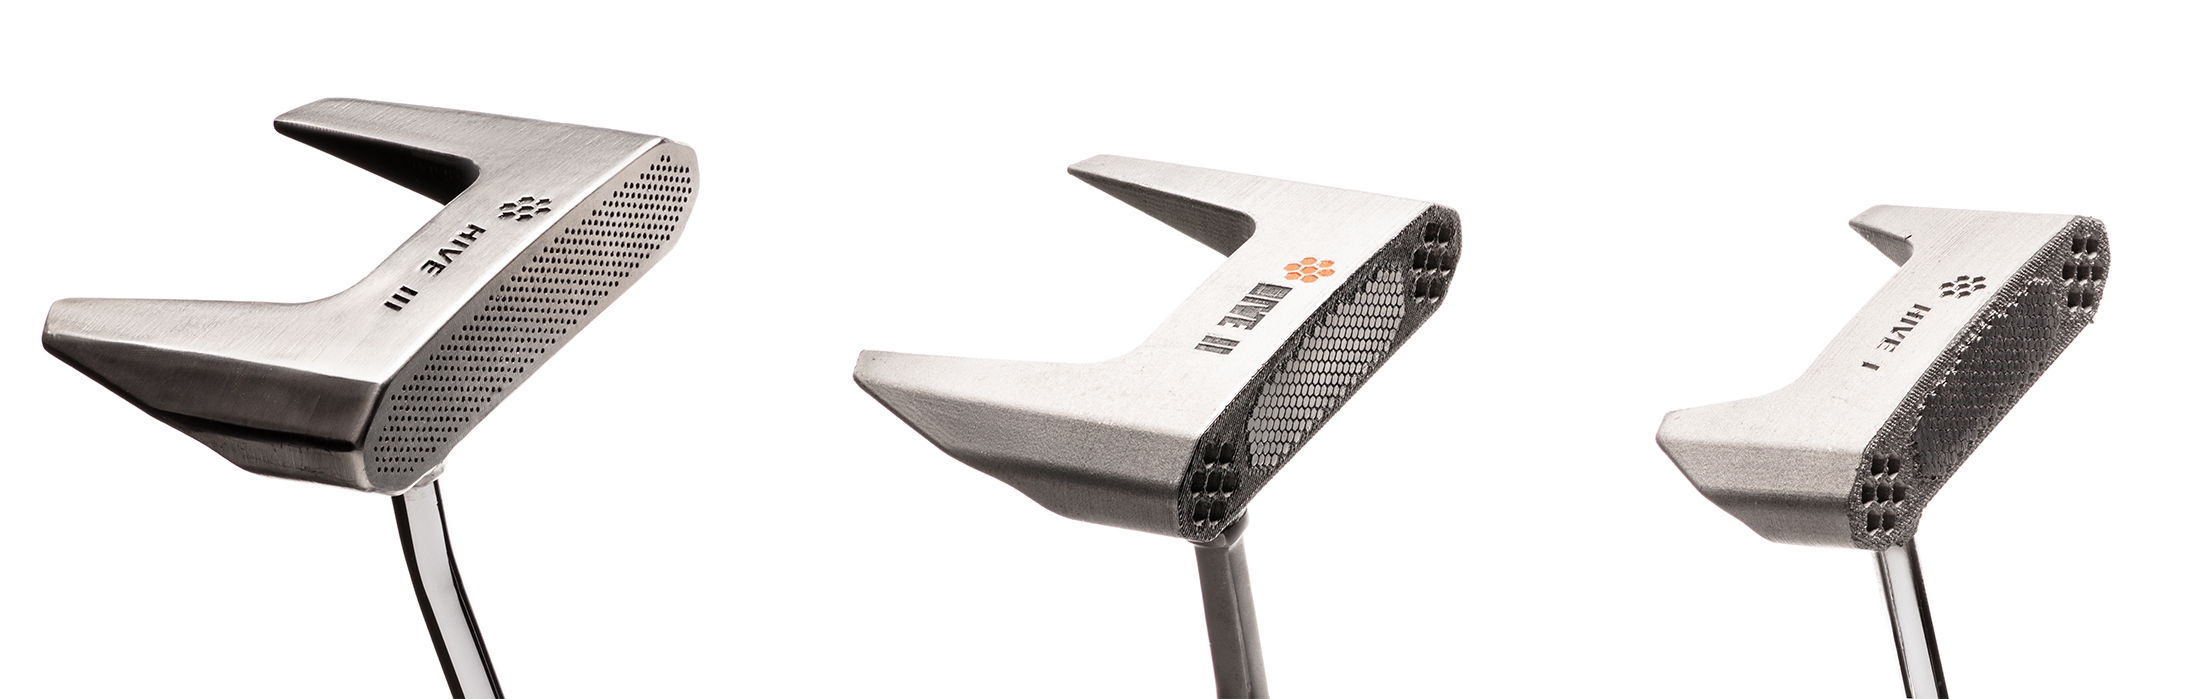 Spektakel Rondsel Prestigieus 3D printed golf clubs | Desktop Metal